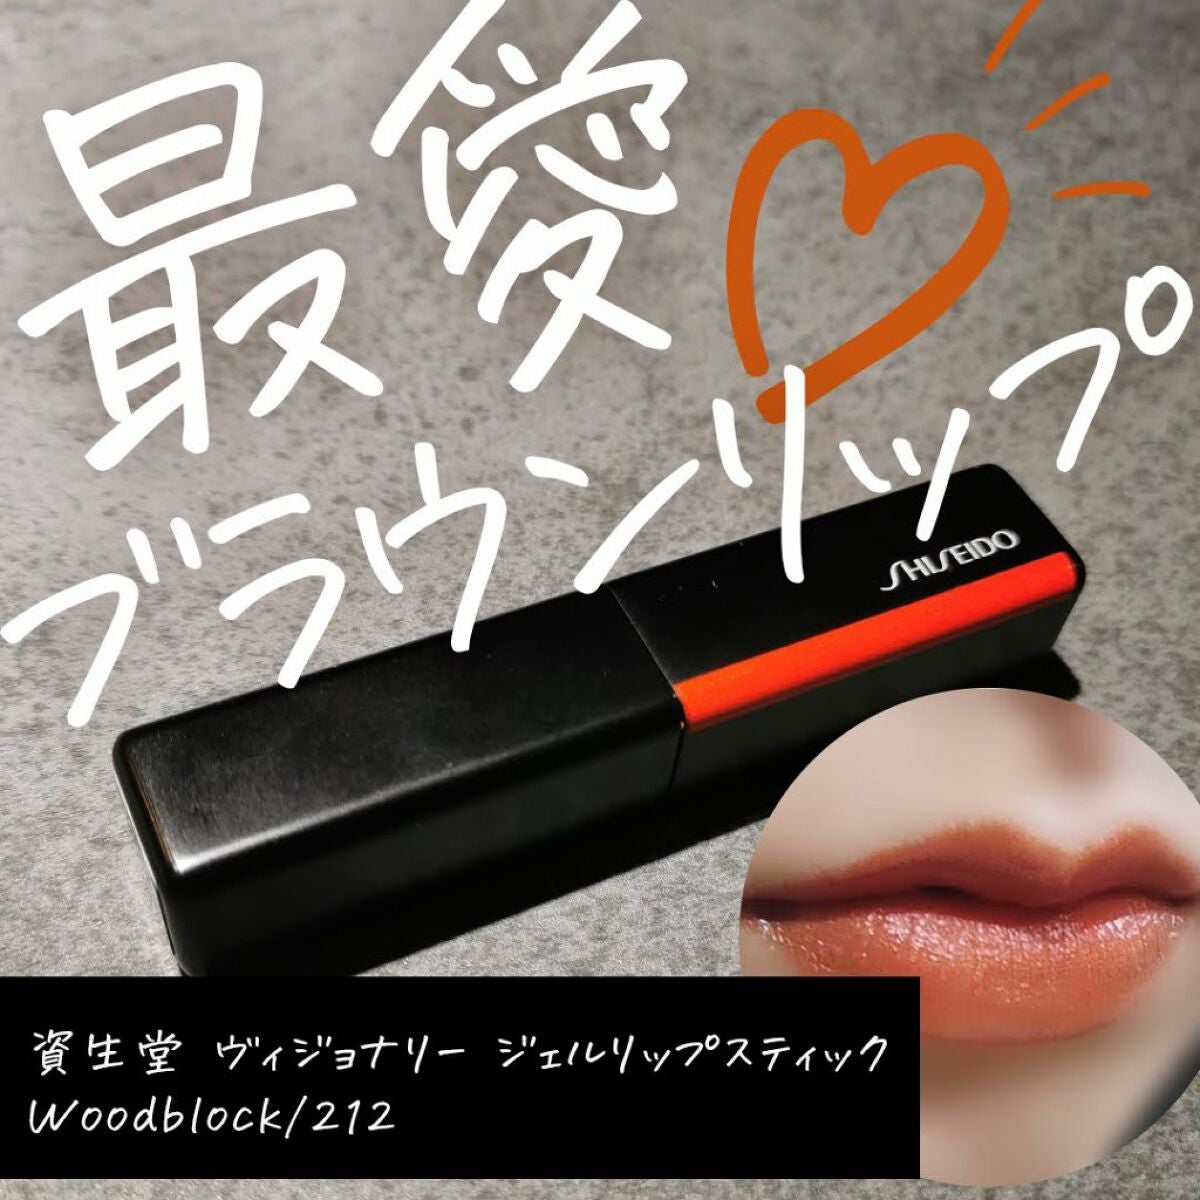 【新品】SHISEIDO ジェルリップスティック ◉ Woodblock